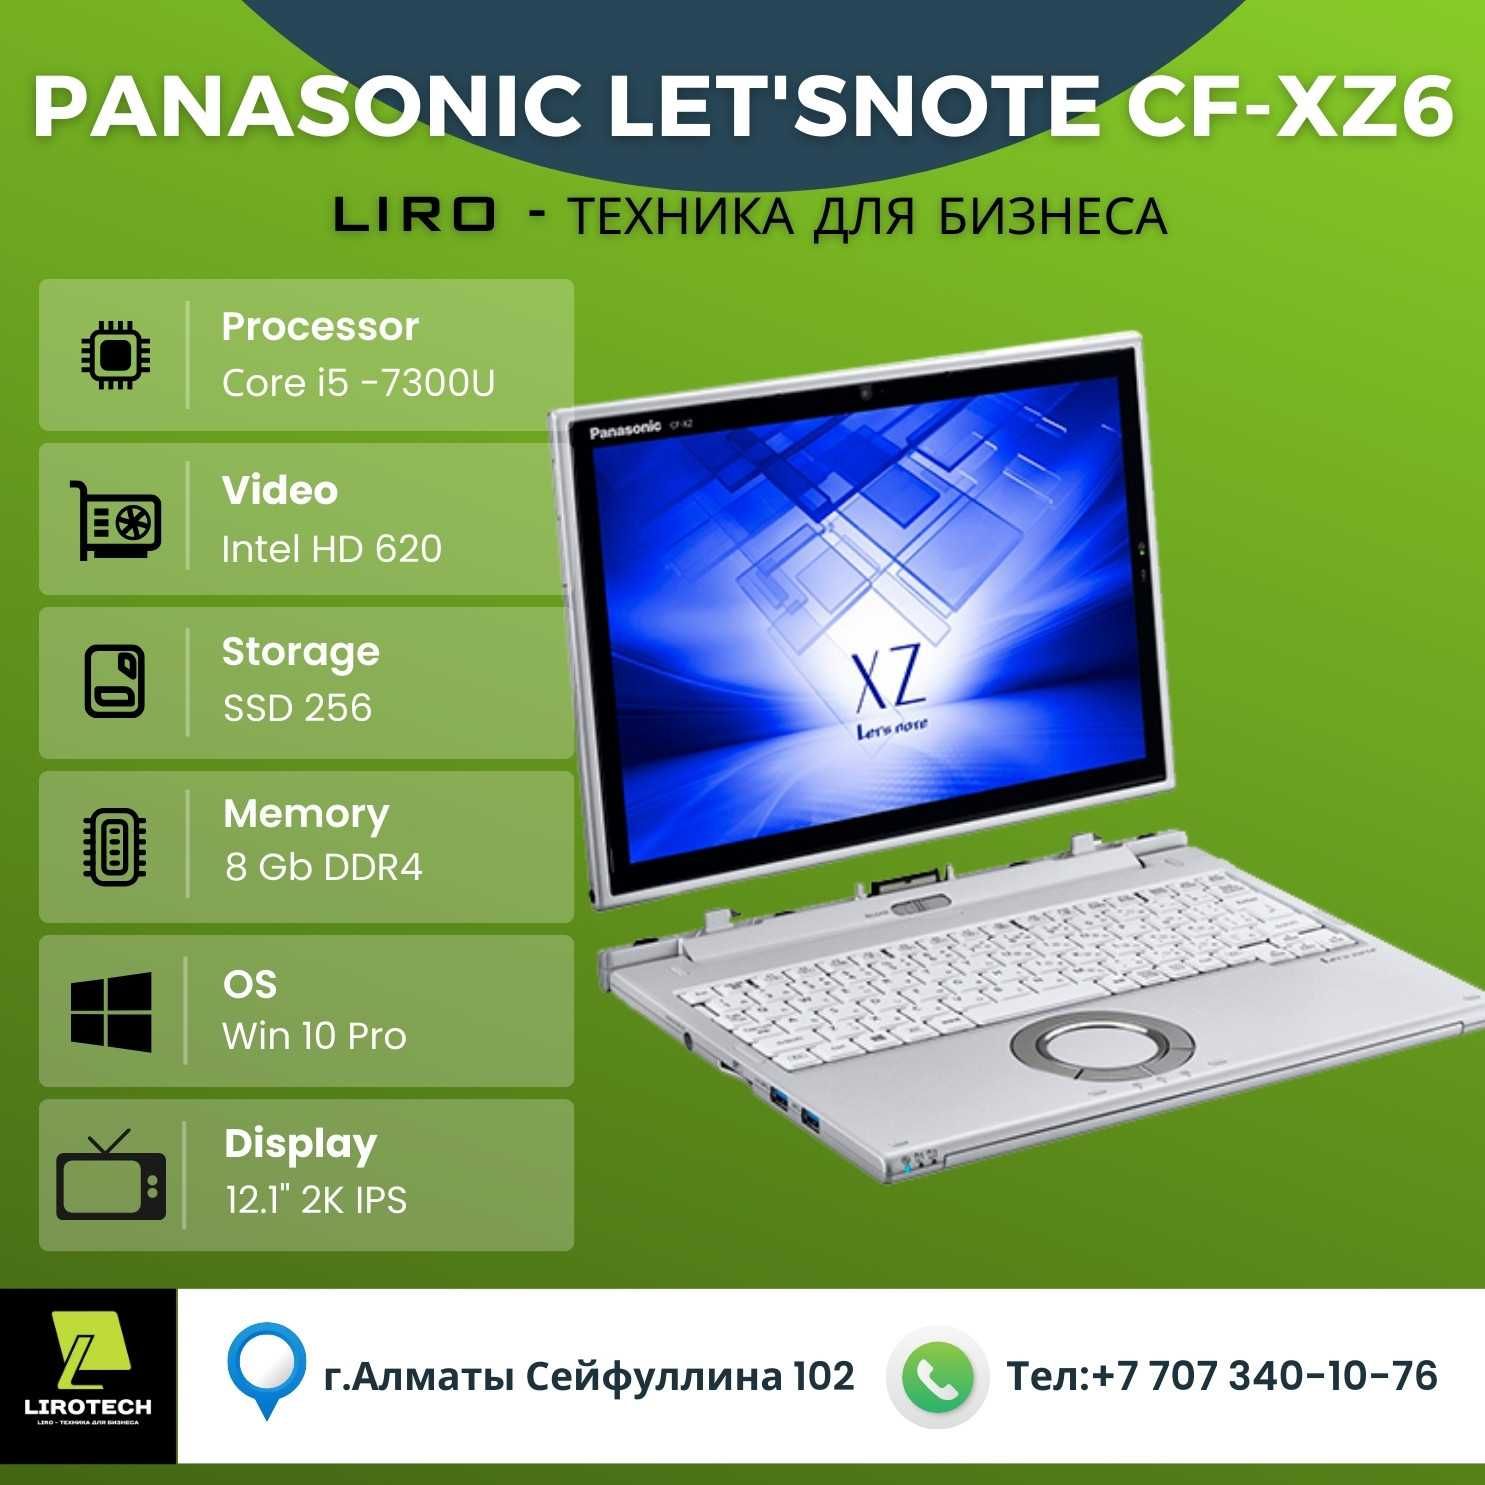 Японский Panasonic Let'snote CF-XZ6 2in1. Сore i5 -7300U 2.6/3.5 Ghz